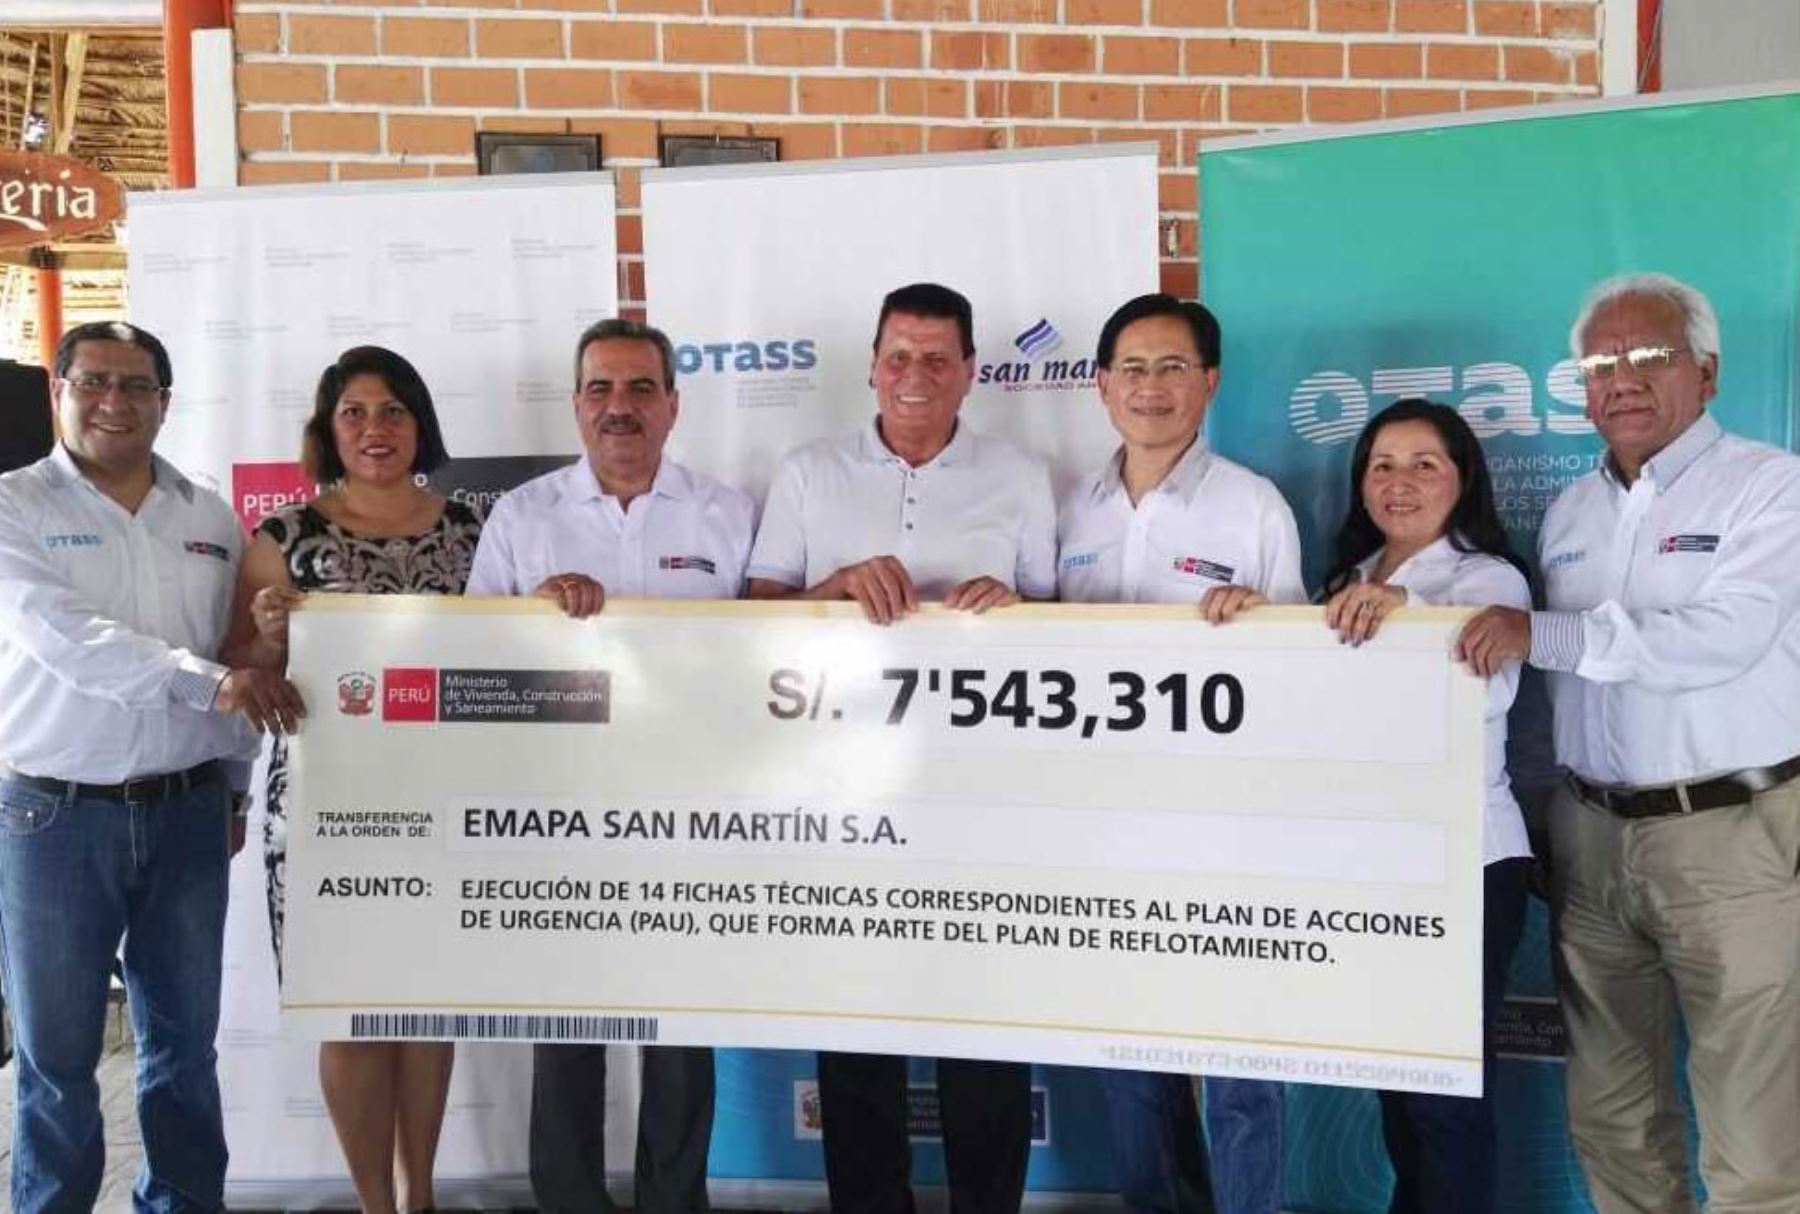 Emapa San Martín es una de las 13 empresas prestadoras administradas por el OTASS a través del régimen de apoyo transitorio, con la finalidad de lograr su reflotamiento.